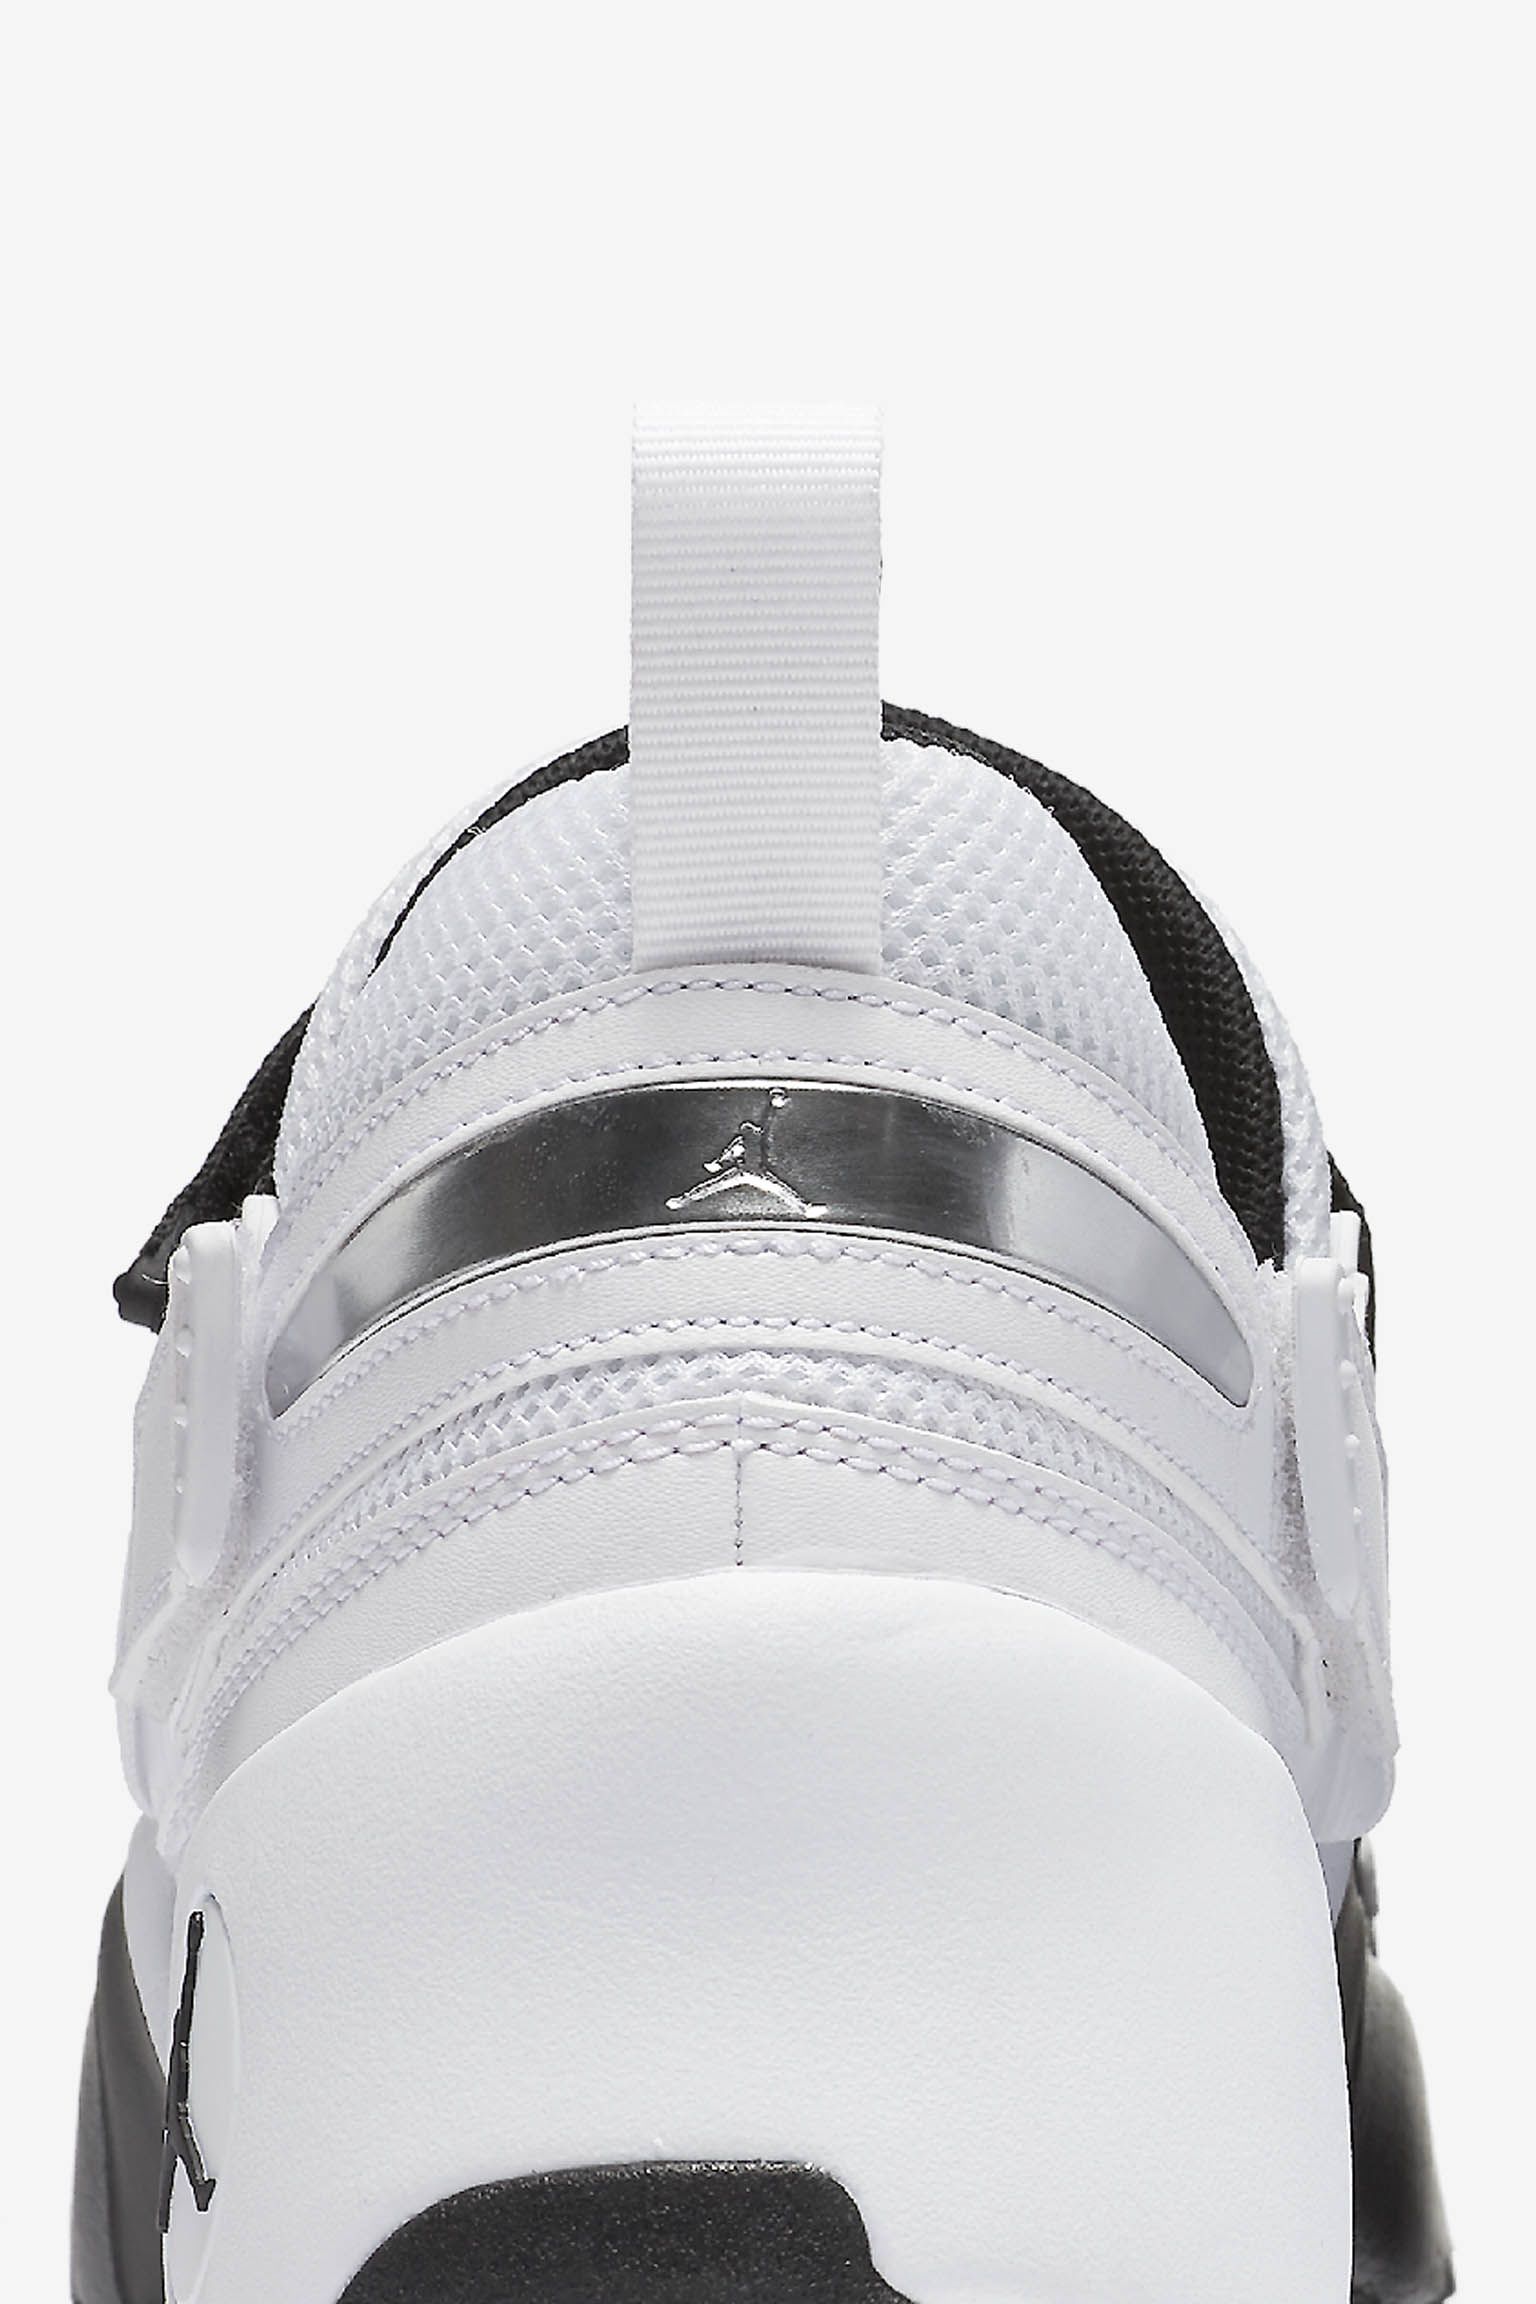 ジョーダン トランナー LX 'Black u0026amp; White'. Nike SNKRS JP